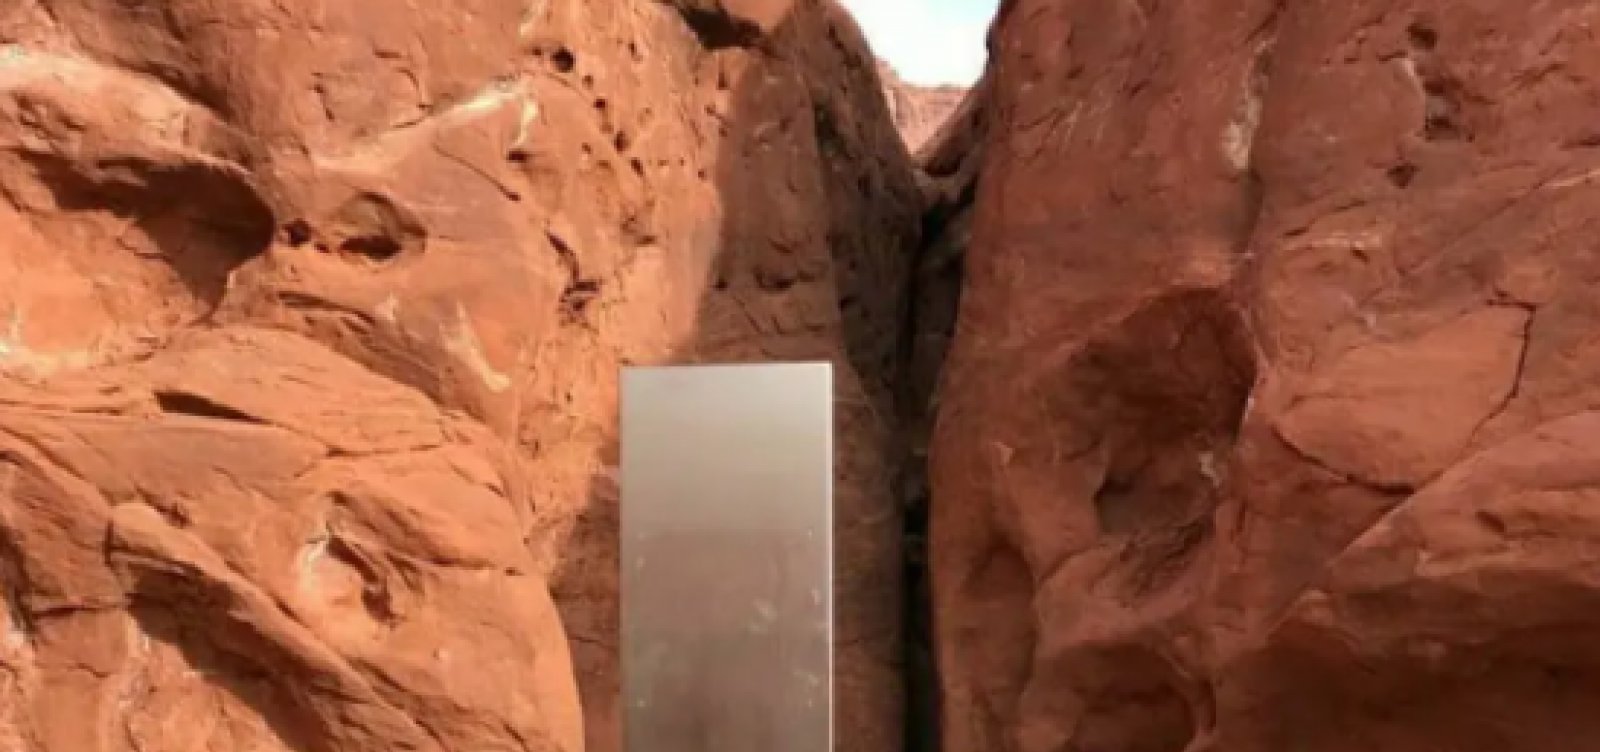 Estranho monolito é encontrado no deserto de Utah, nos Estados Unidos